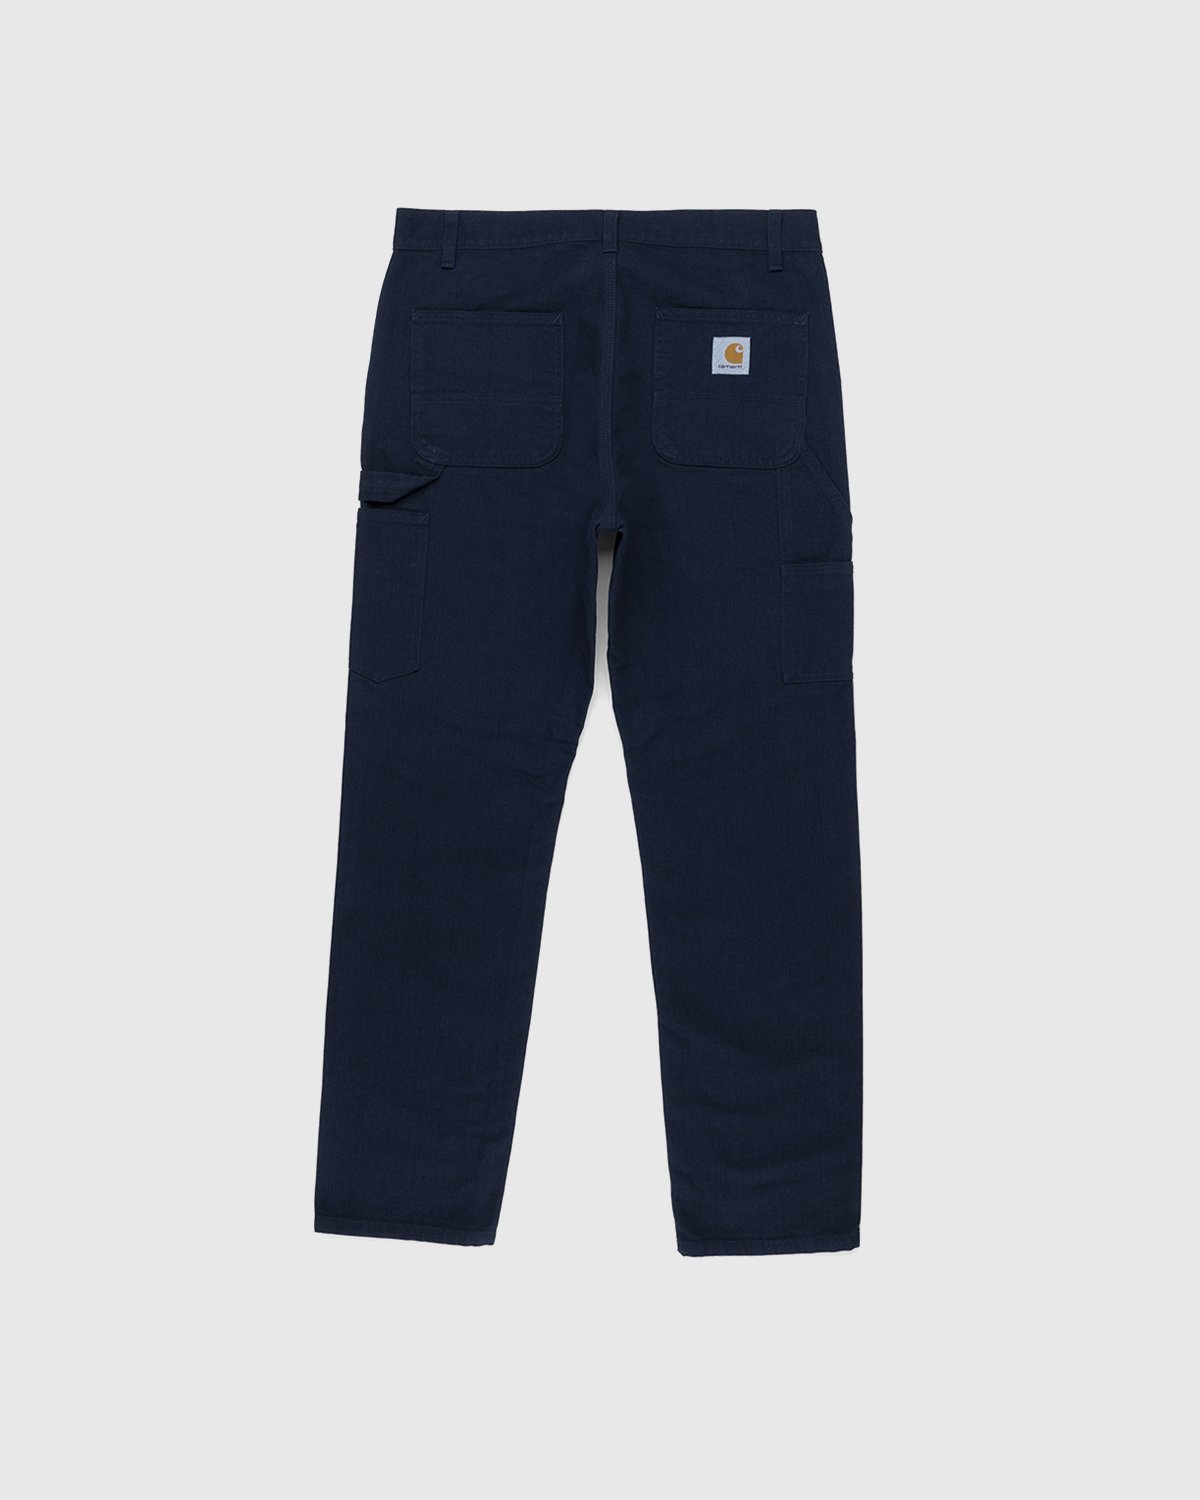 Carhartt WIP - Ruck Single Knee Pant Dark Navy - Clothing - Blue - Image 2